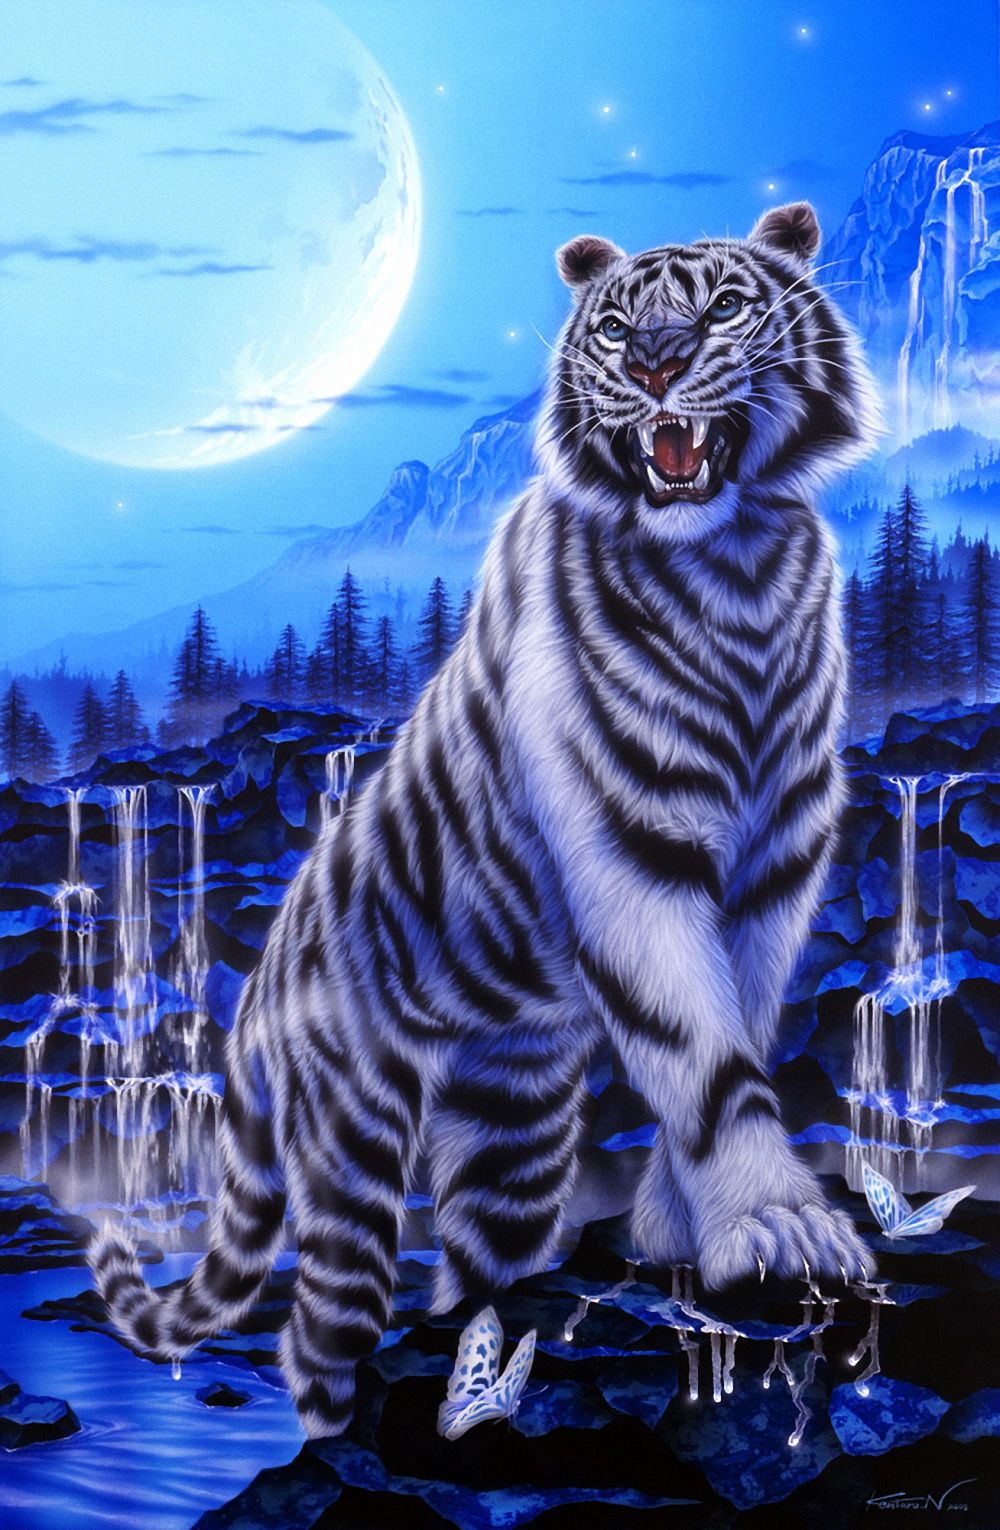 hình nền điện thoại đẹp con hổ Tiger wallpaper Tiger images Animal wallpaper